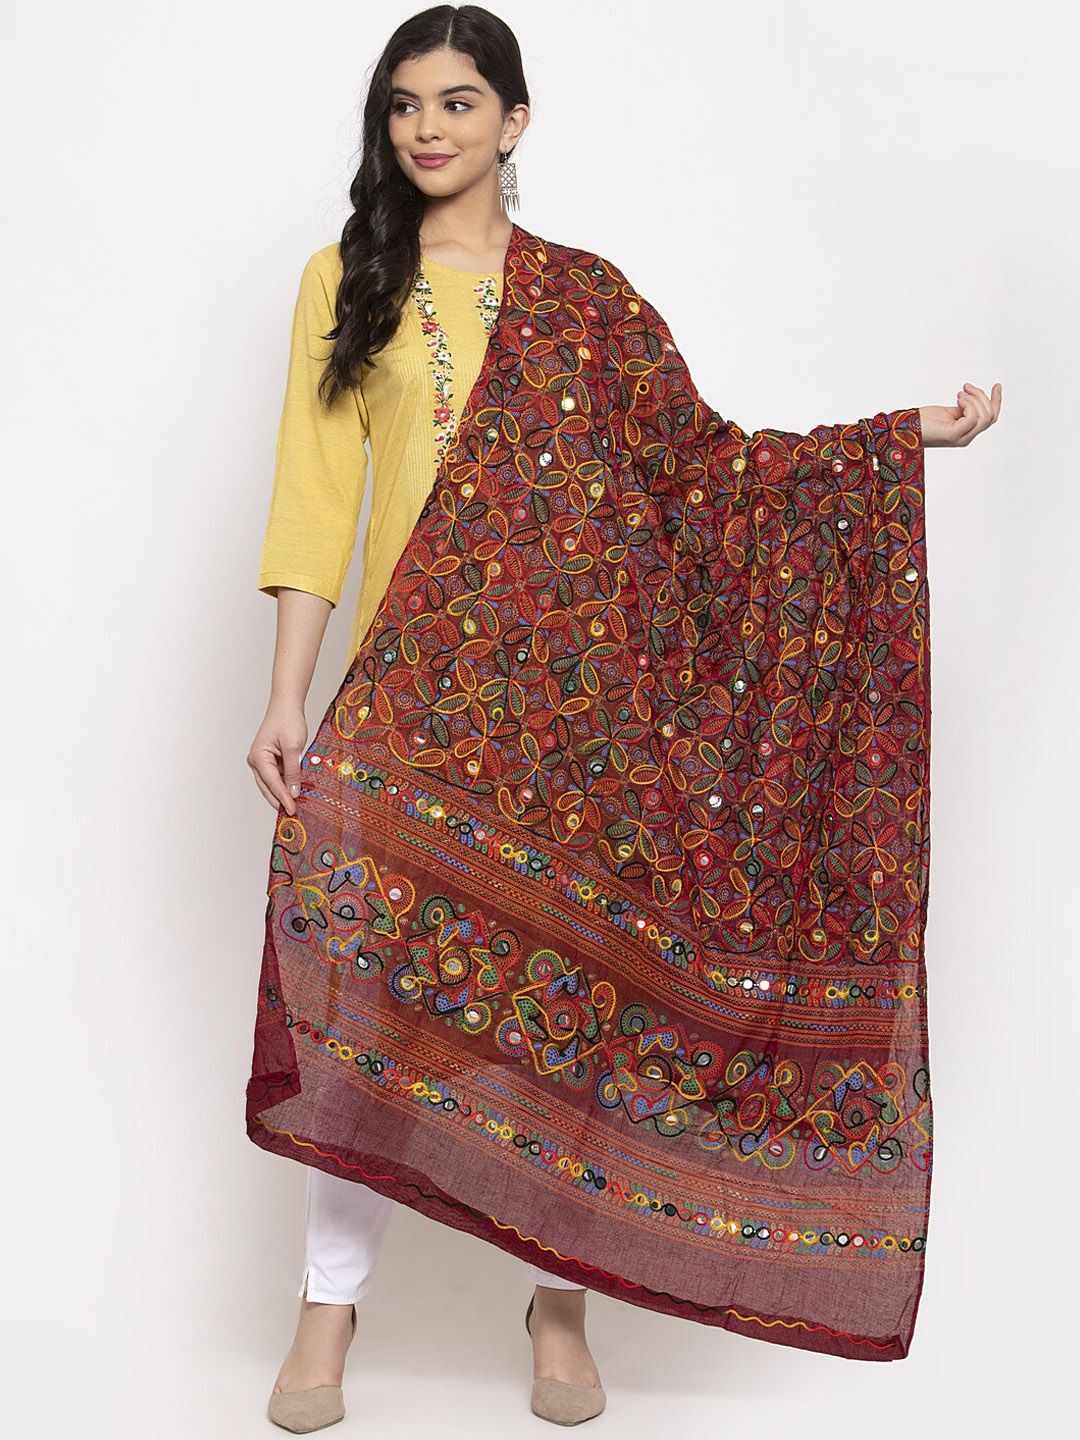 Clora Creation Multicoloured Embroidered Cotton Dupatta Price in India